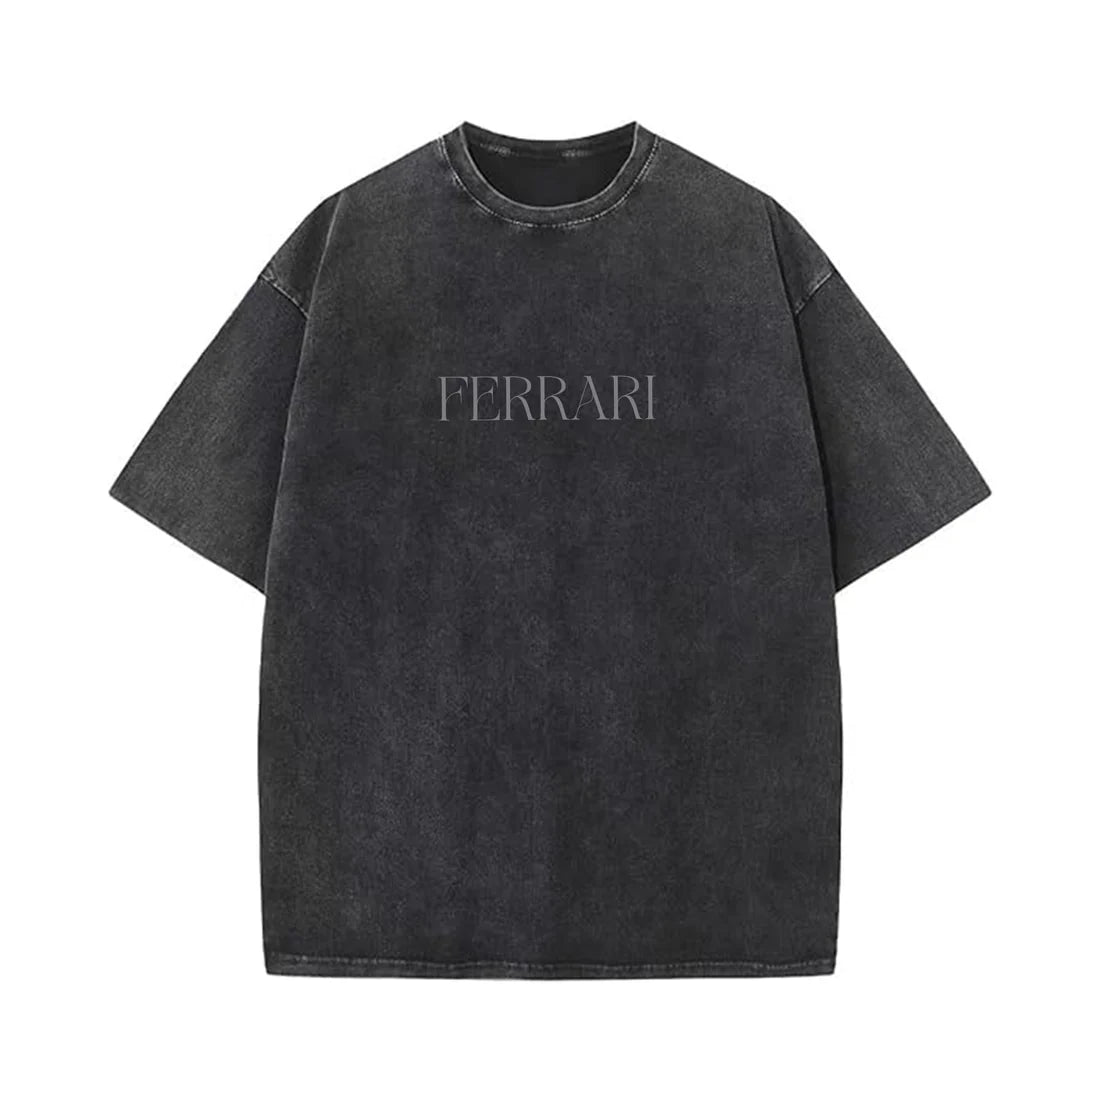 Ferrari Designed Vintage Oversized T-shirt